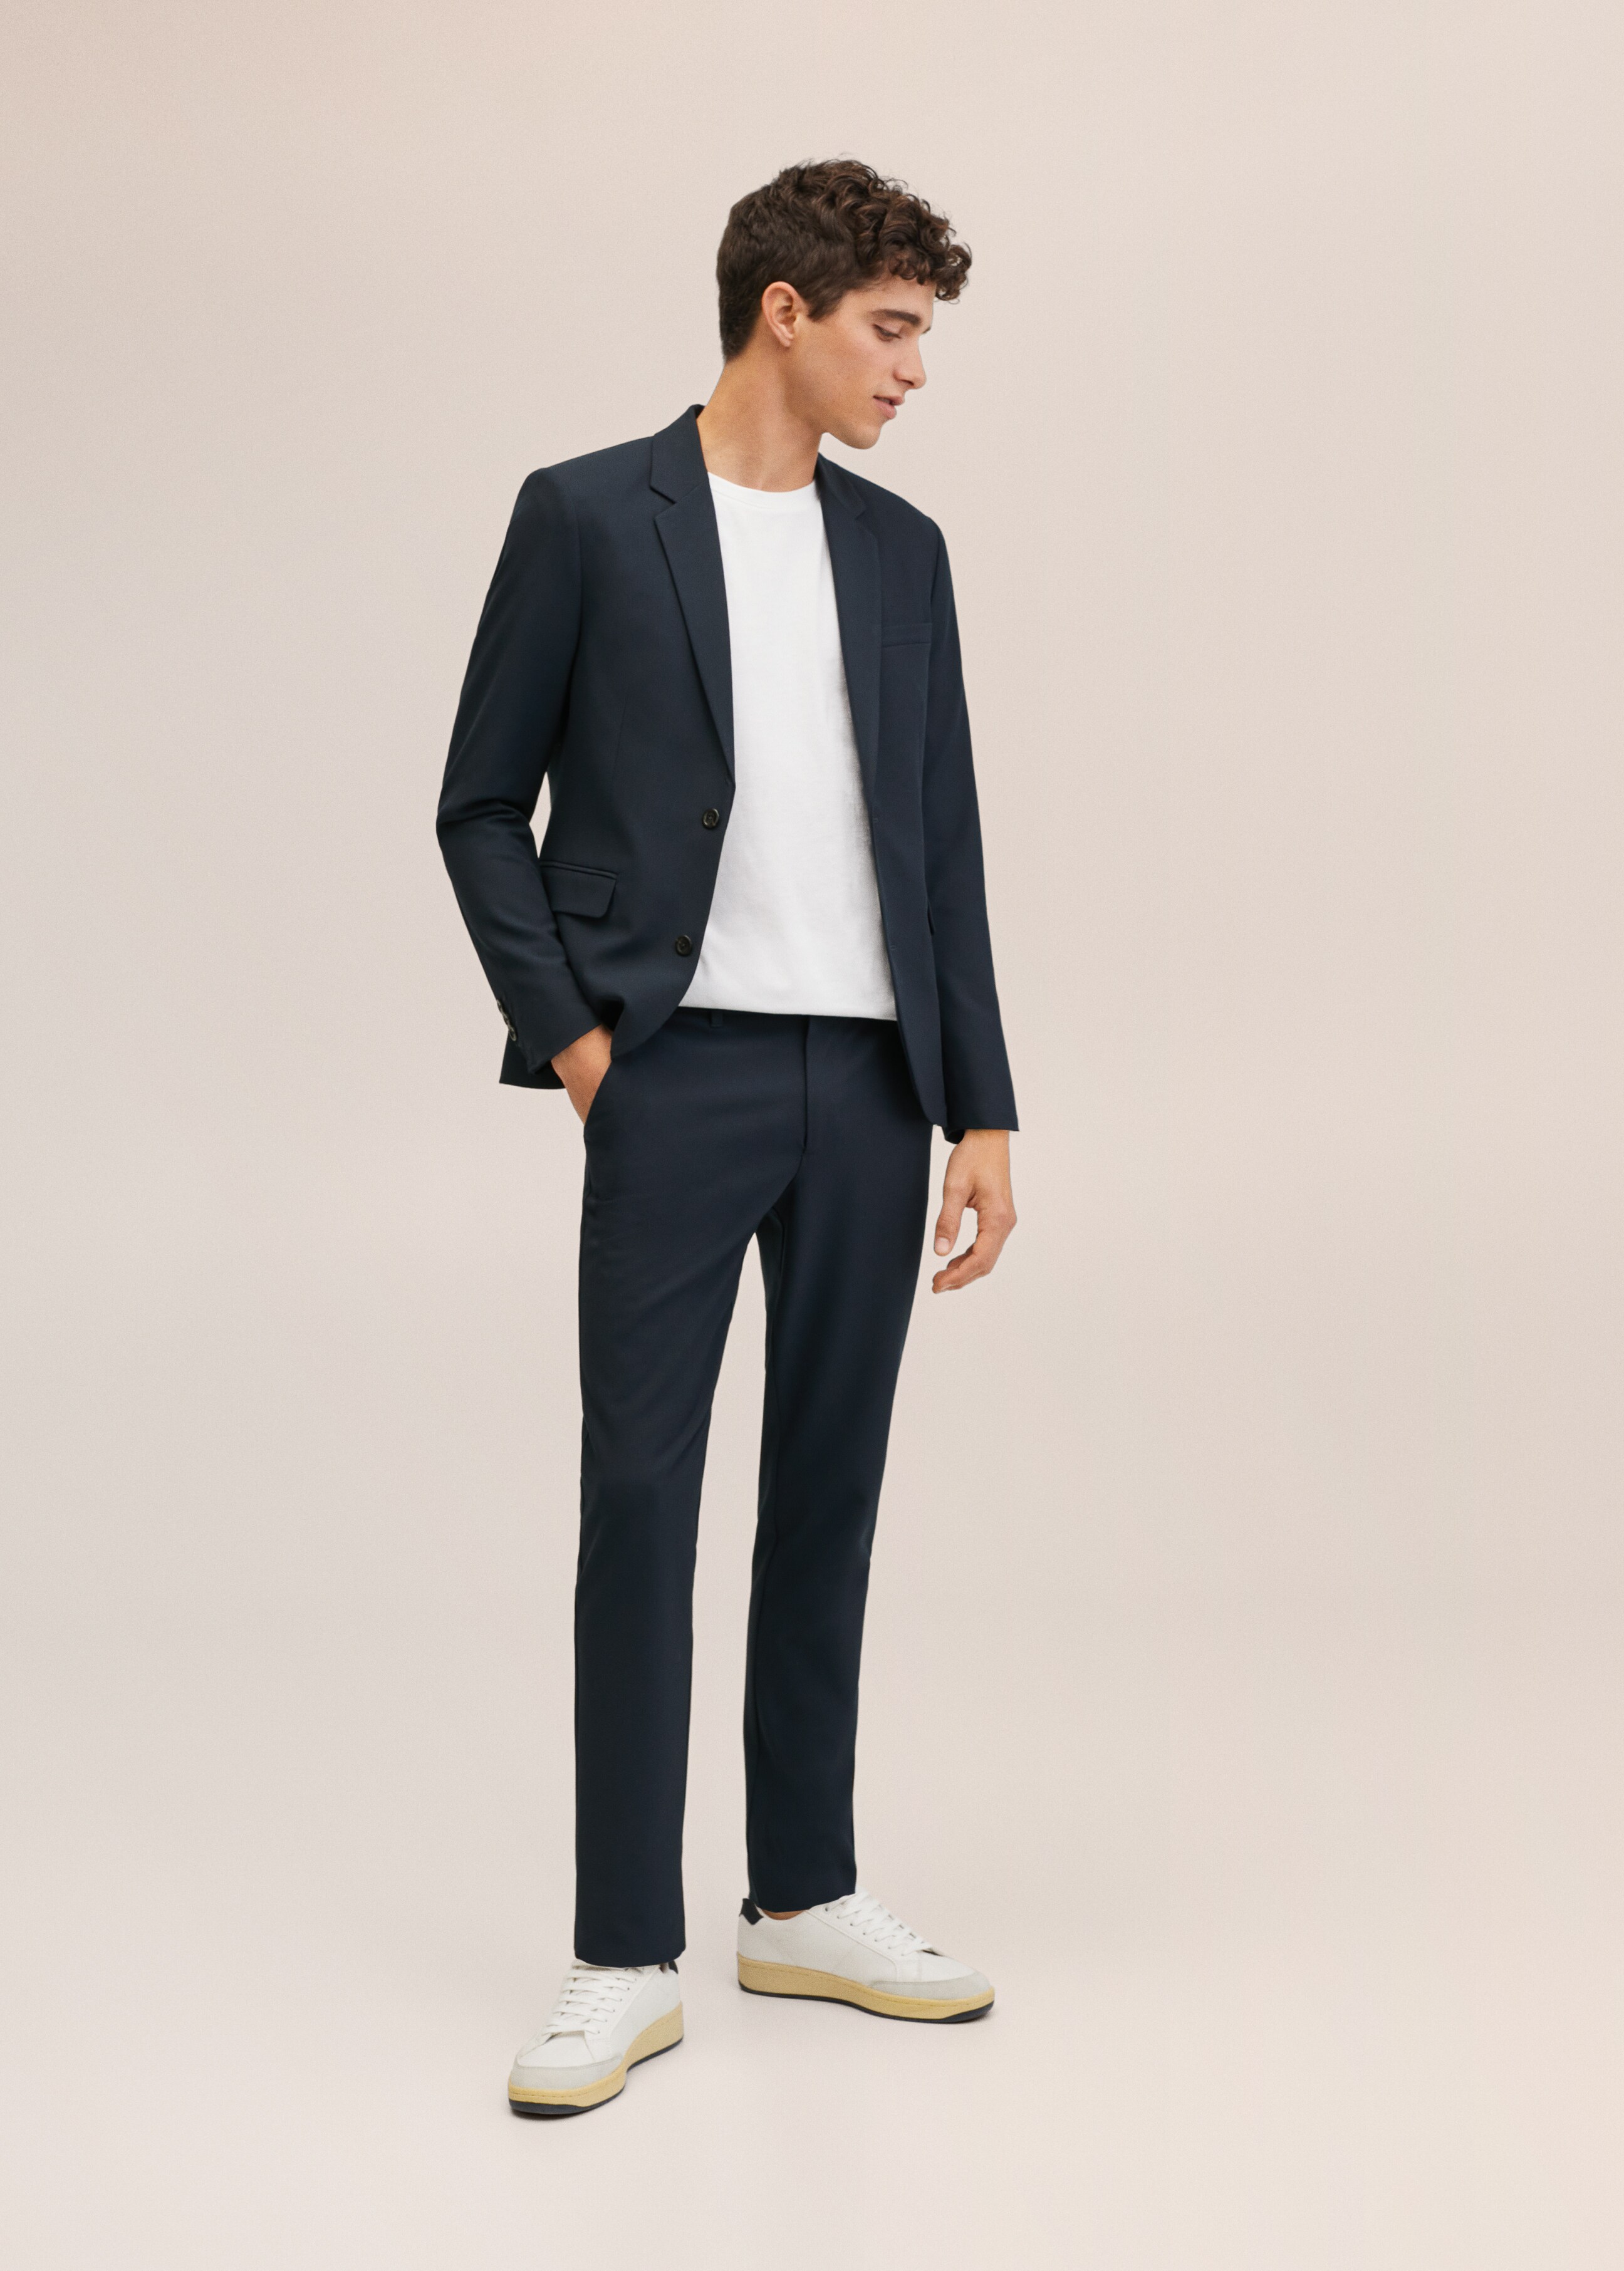  Suit trousers - Medium plane